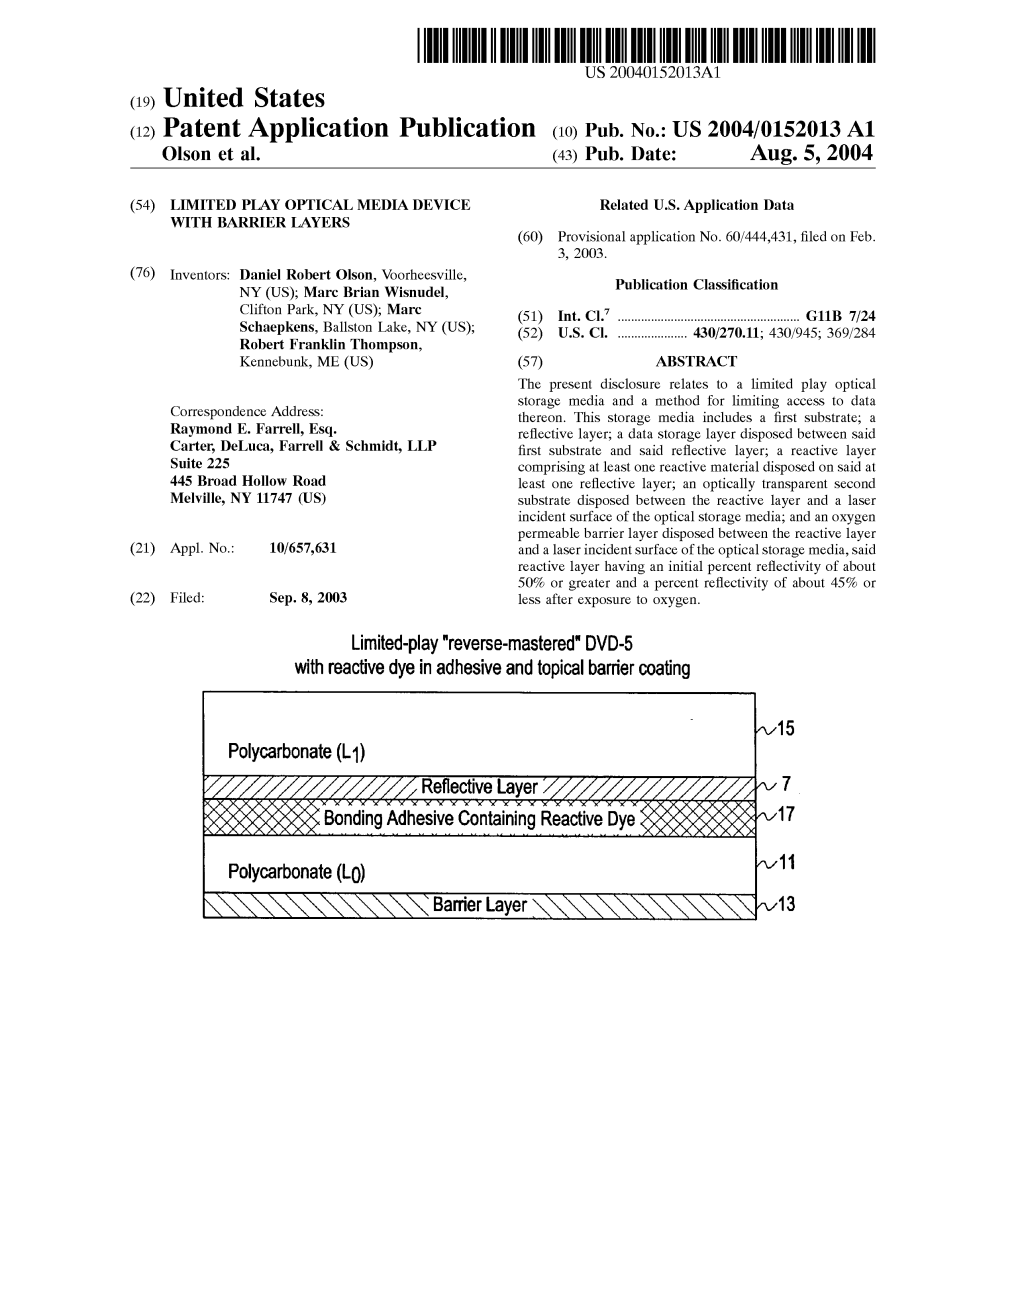 (12) Patent Application Publication (10) Pub. No.: US 2004/0152013 A1 Olson Et Al